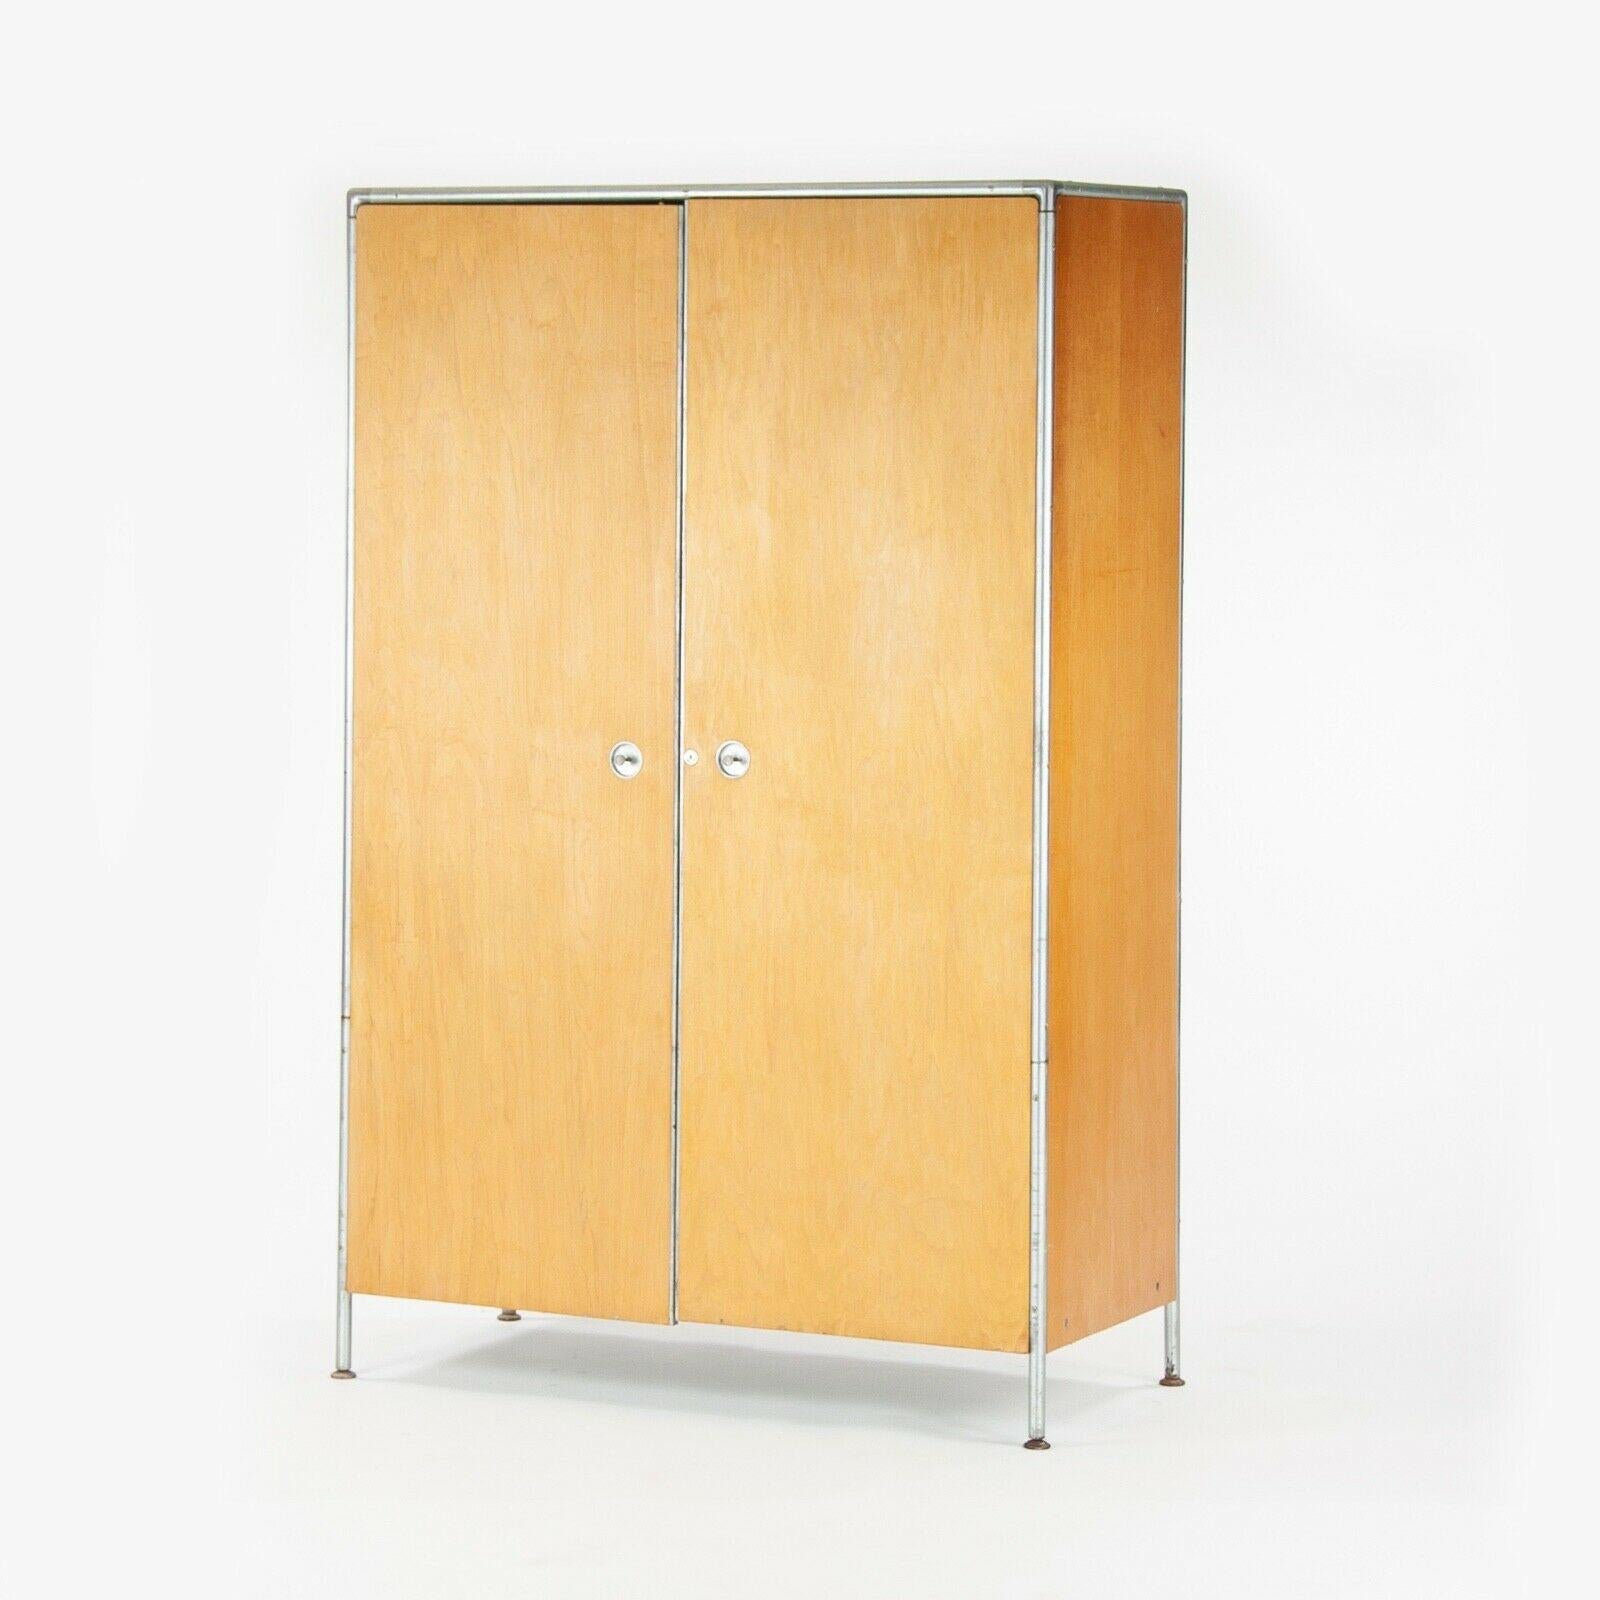 La vente porte sur une armoire datant de 1956, conçue par Henry P Glass et produite par la Fleetwood Furniture Company. Cet exemple provient de la série de tubes d'acier de Glass, qui comprenait de nombreux chariots roulants, bibliothèques, coffres